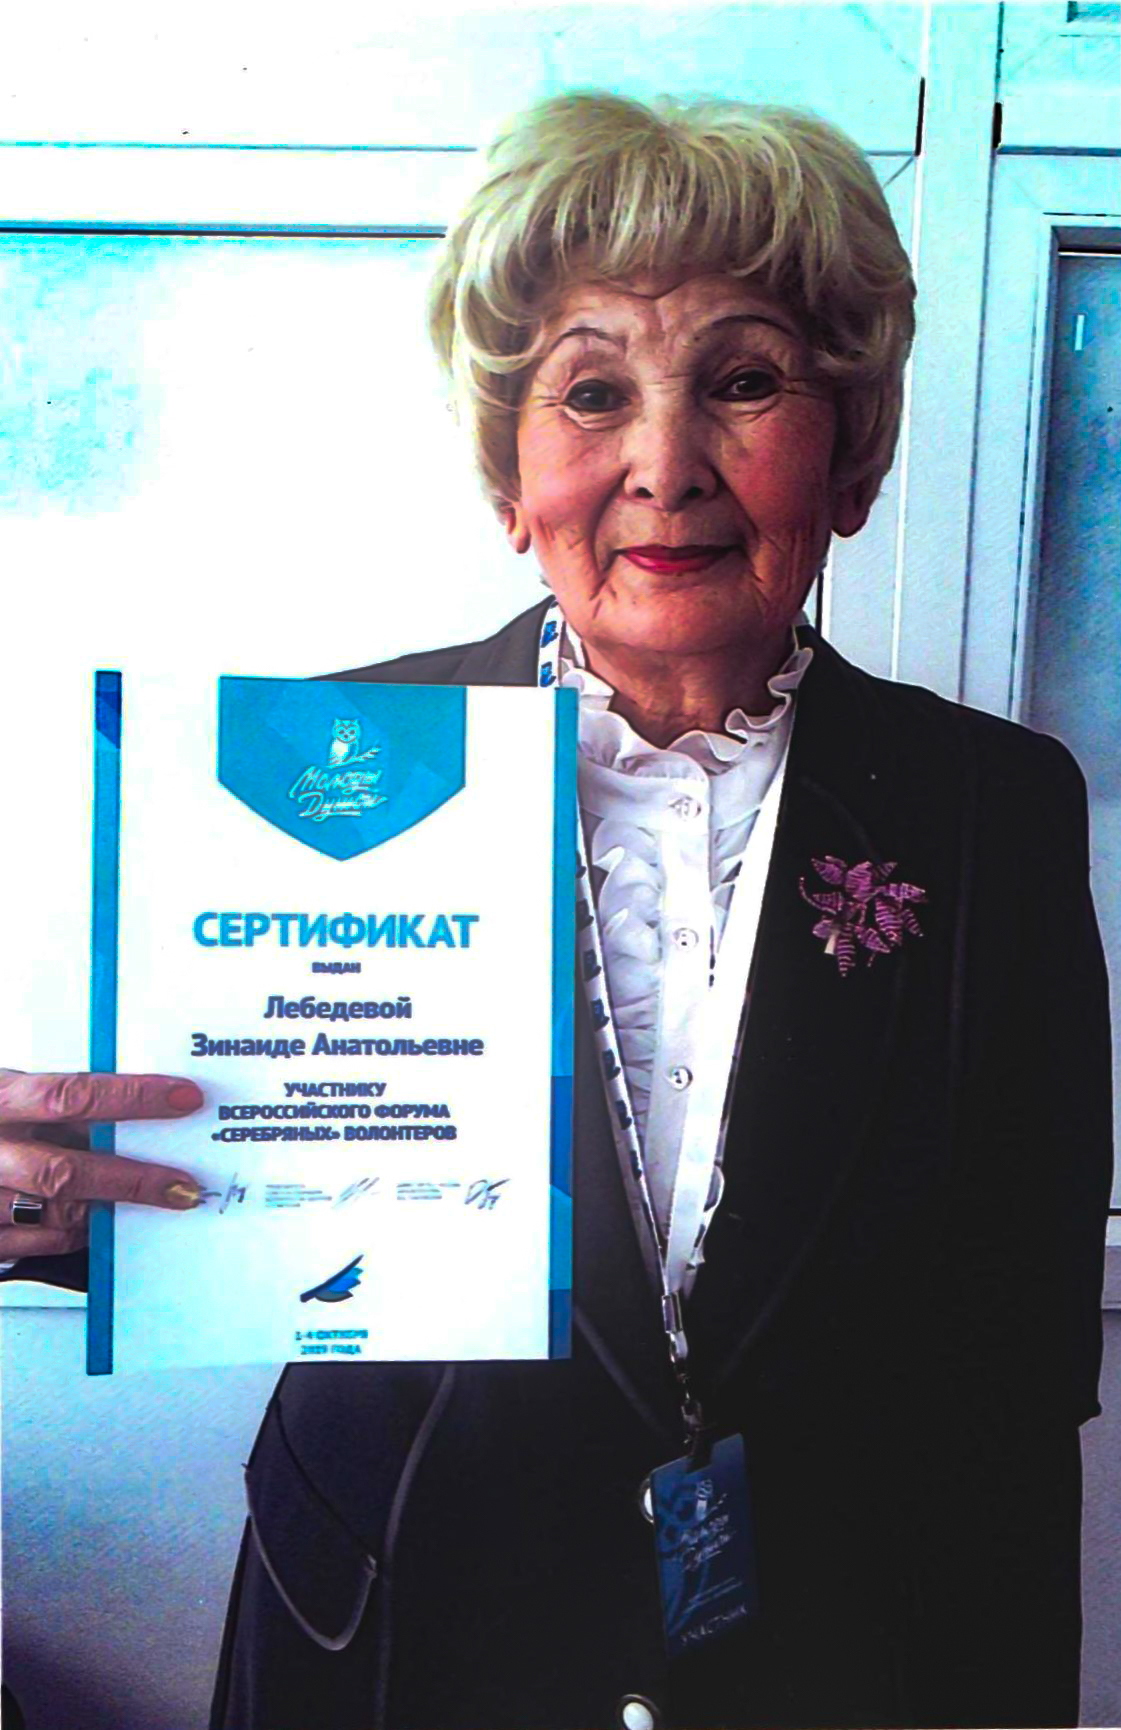 Зинаида Анатольевна награждена сертификатом участника Всероссийского форума «серебряных» волонтеров.